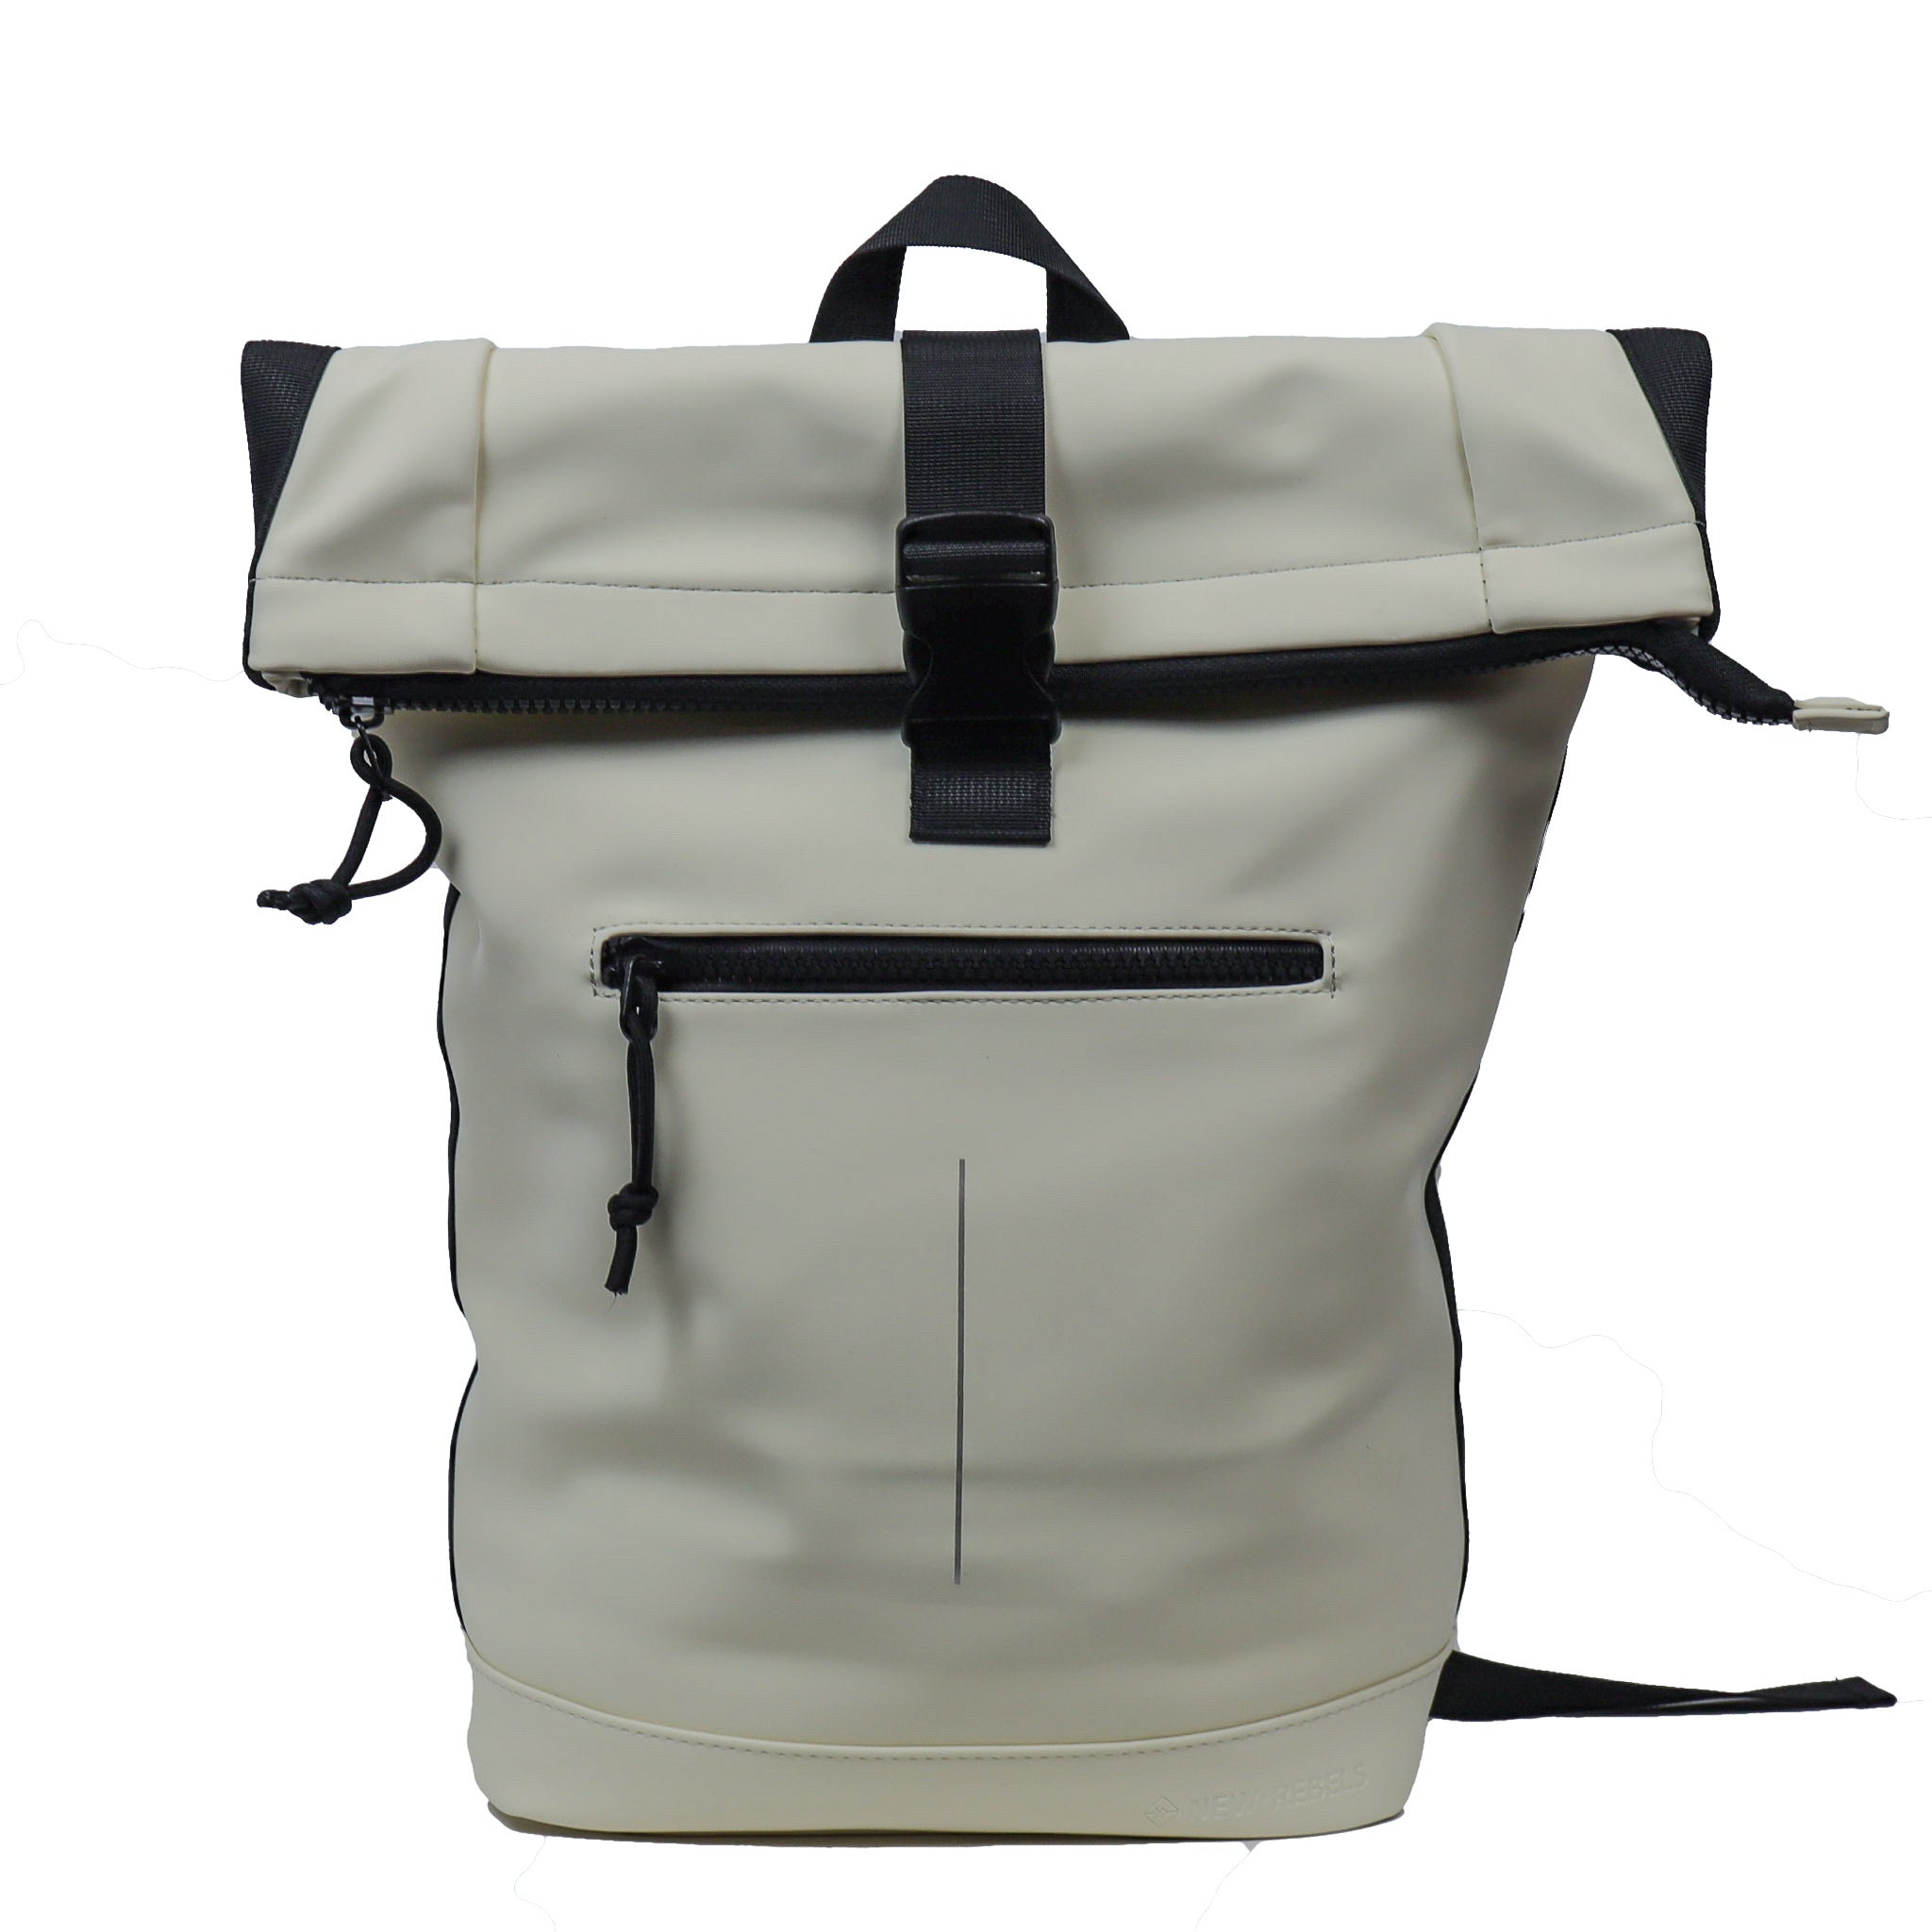 Backpack 'Mart' light gray 16L